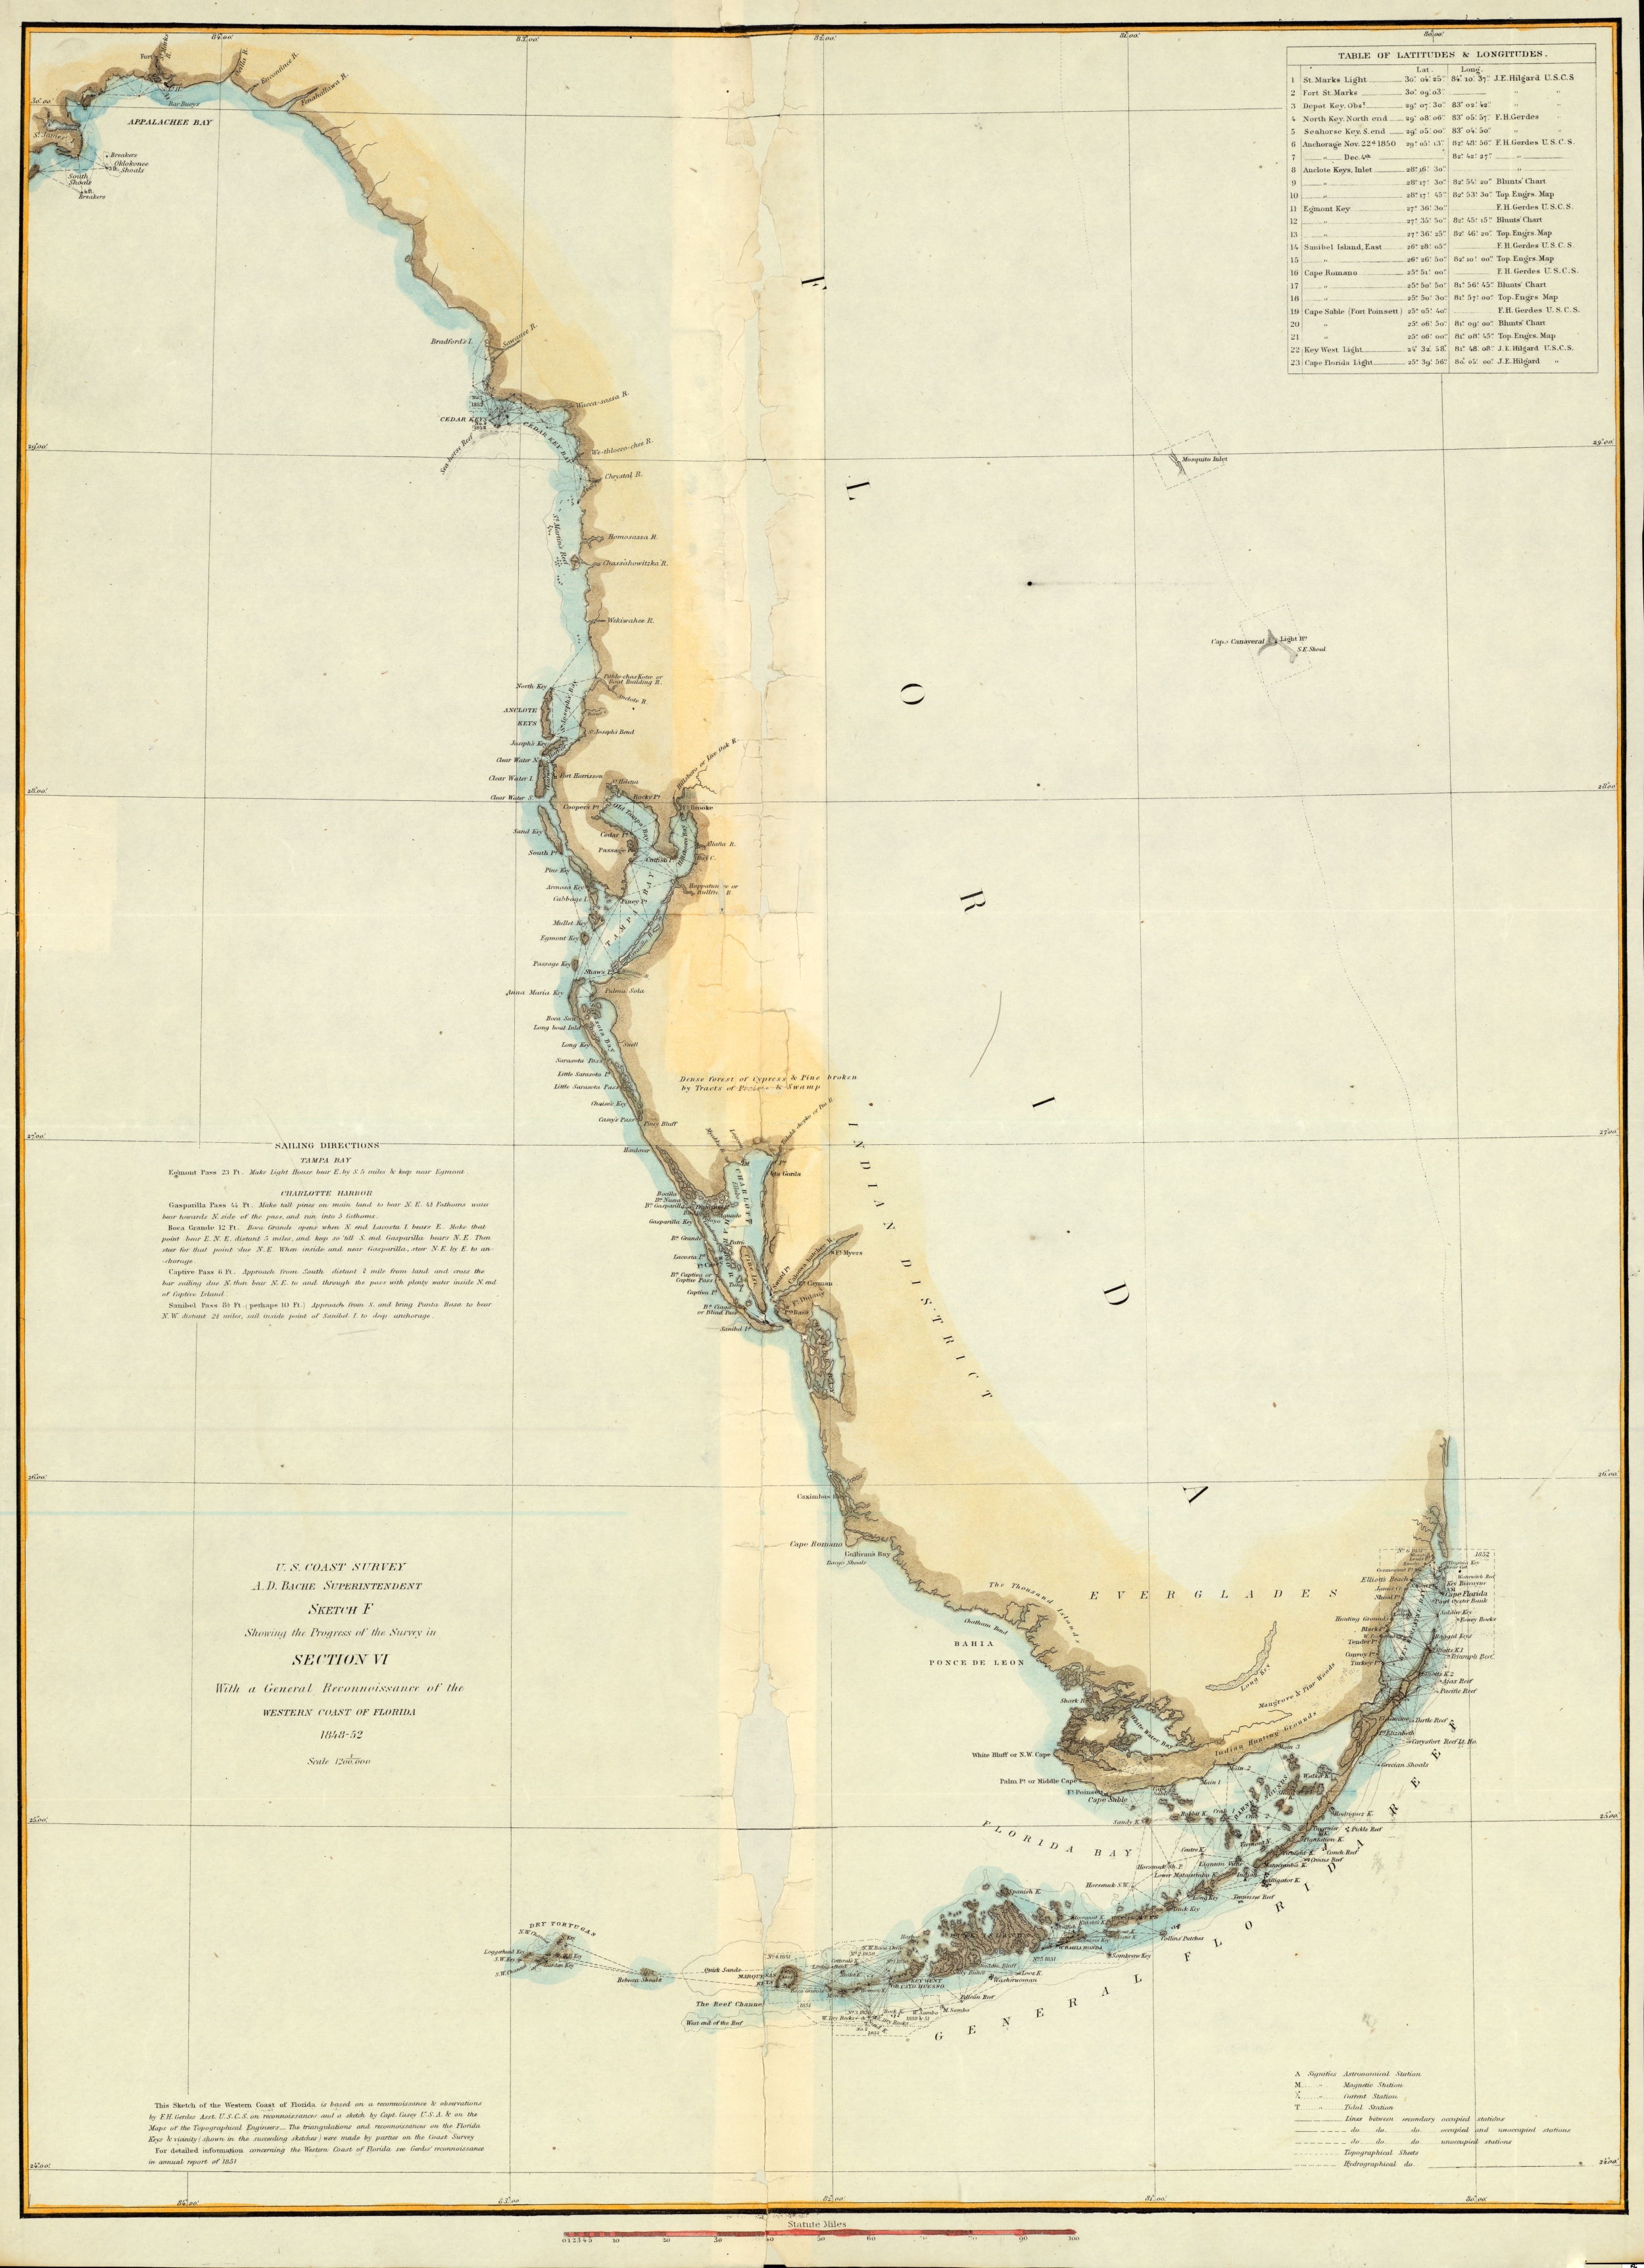 U.S. Coast Survey Map of West Coast of Florida, 1852